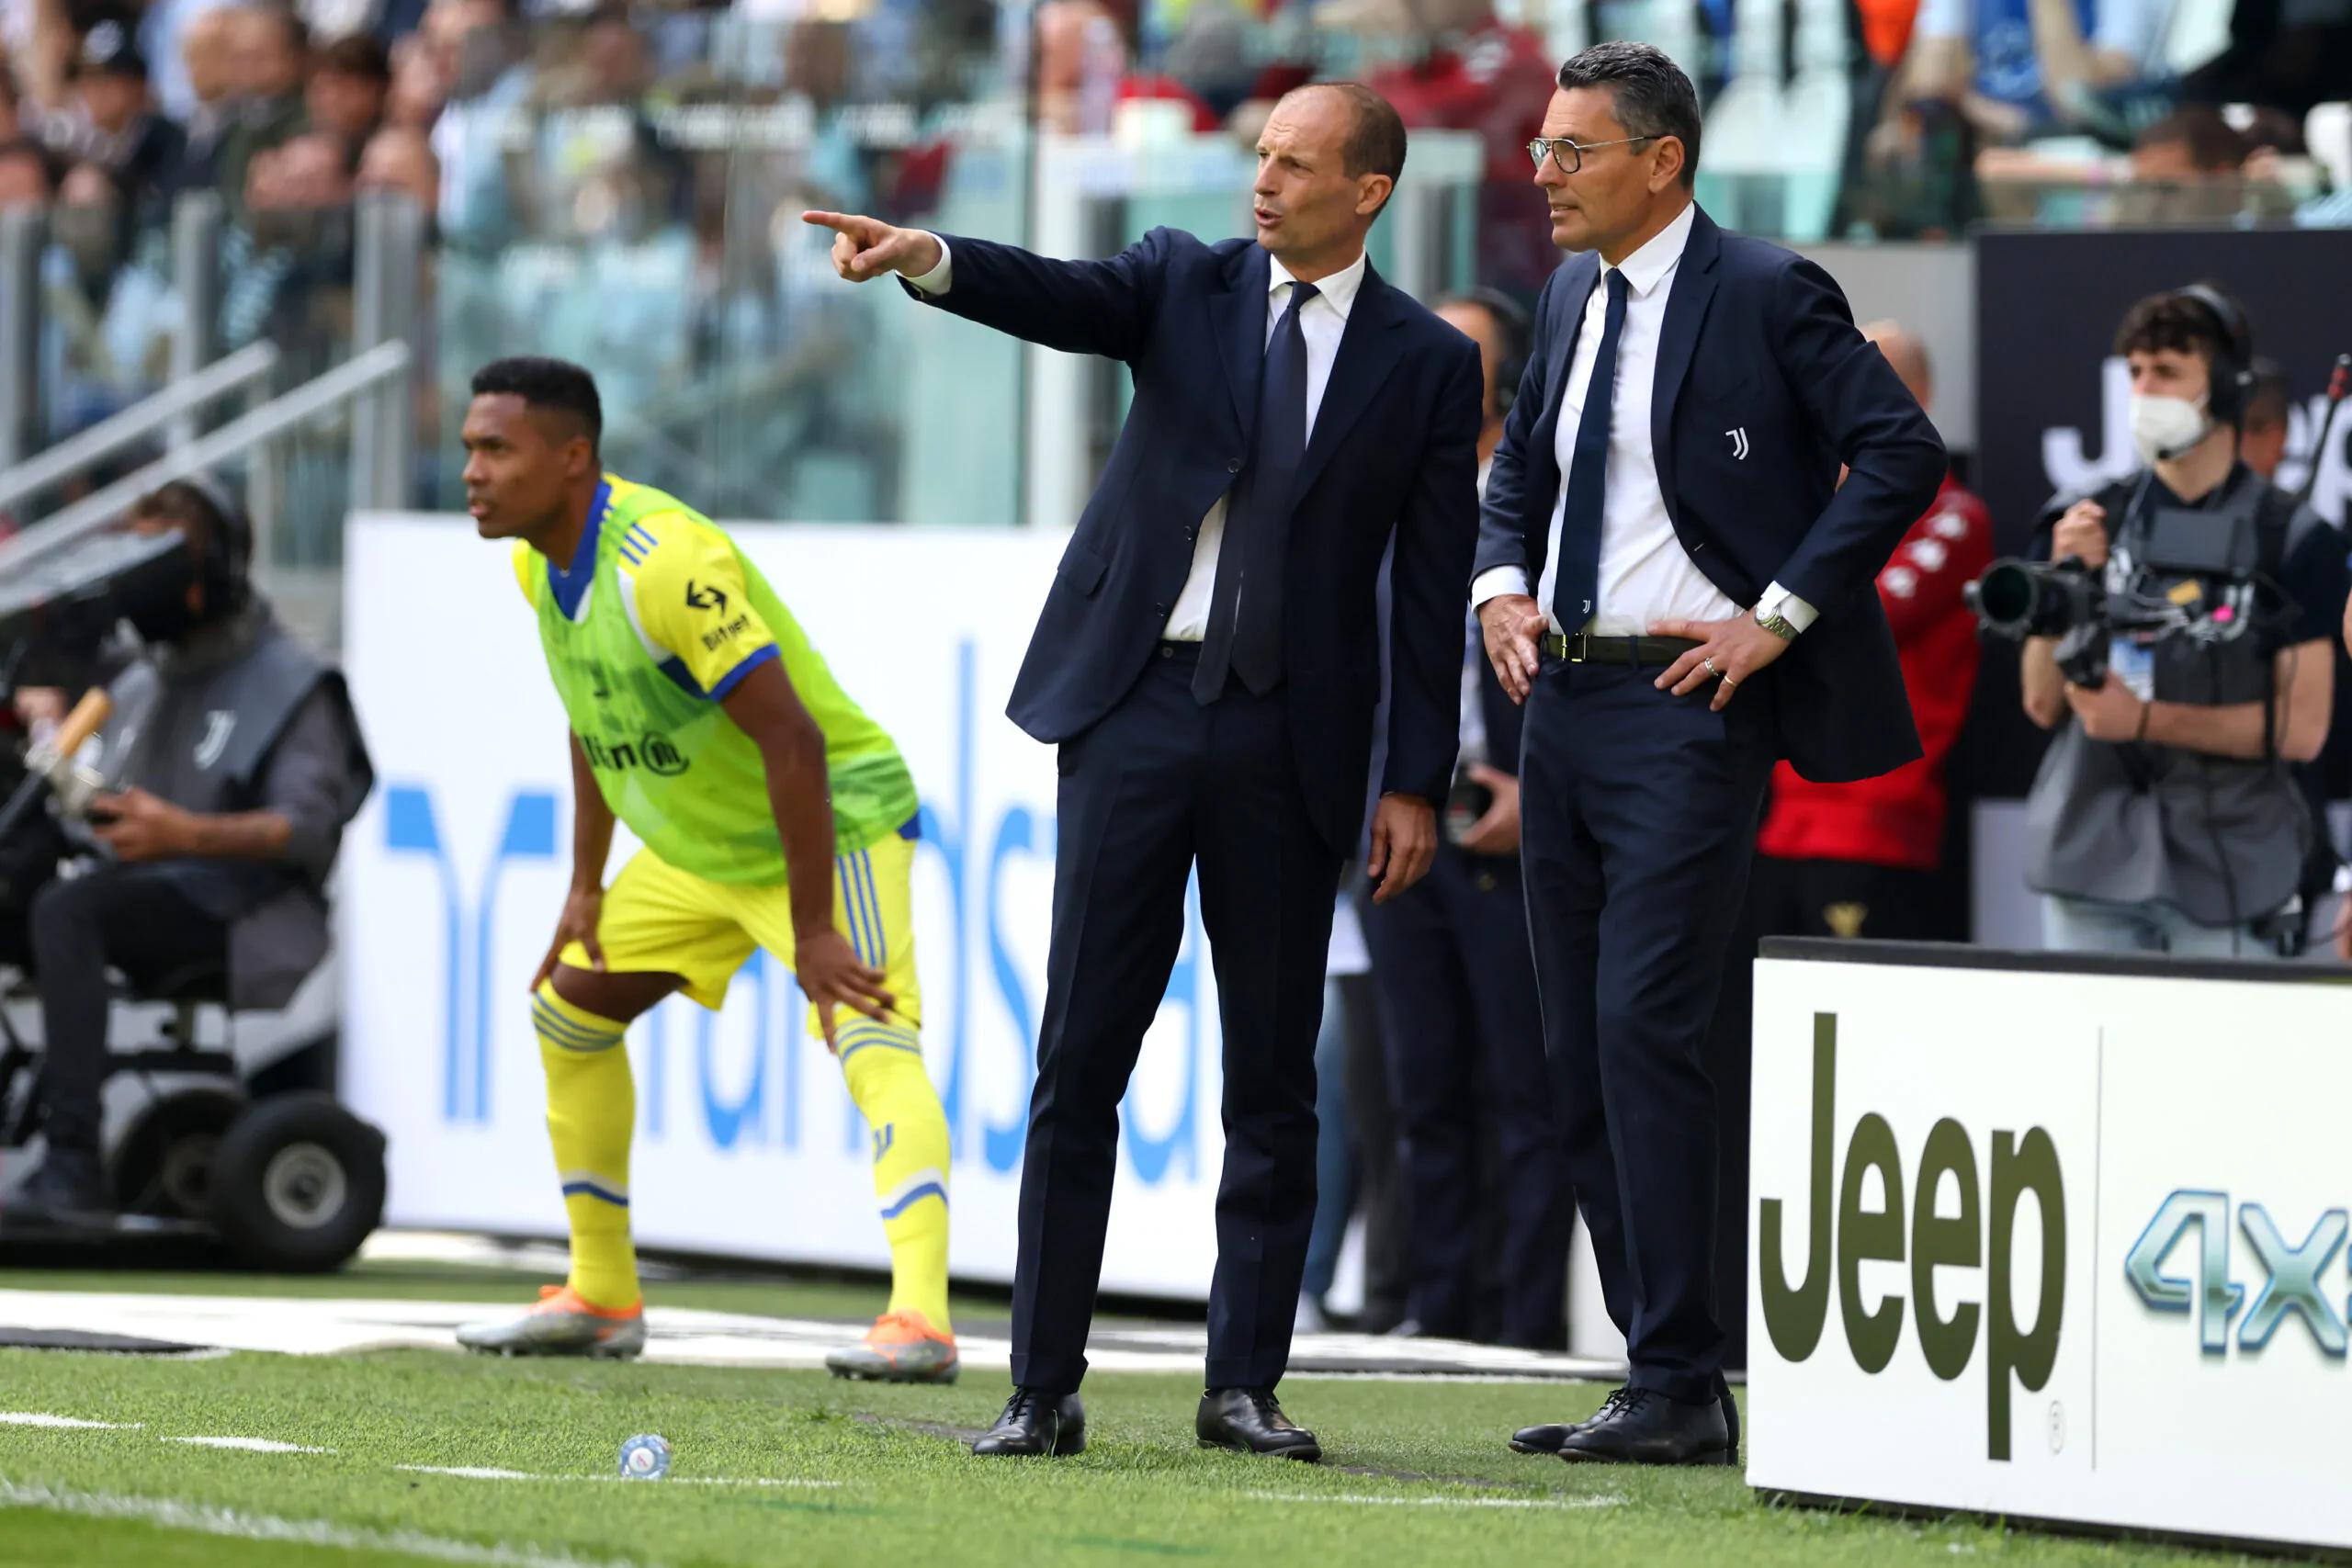 Maddaloni consiglia la Juventus: ”Deve farlo per migliorare”, poi la risposta sul programma di Andreini